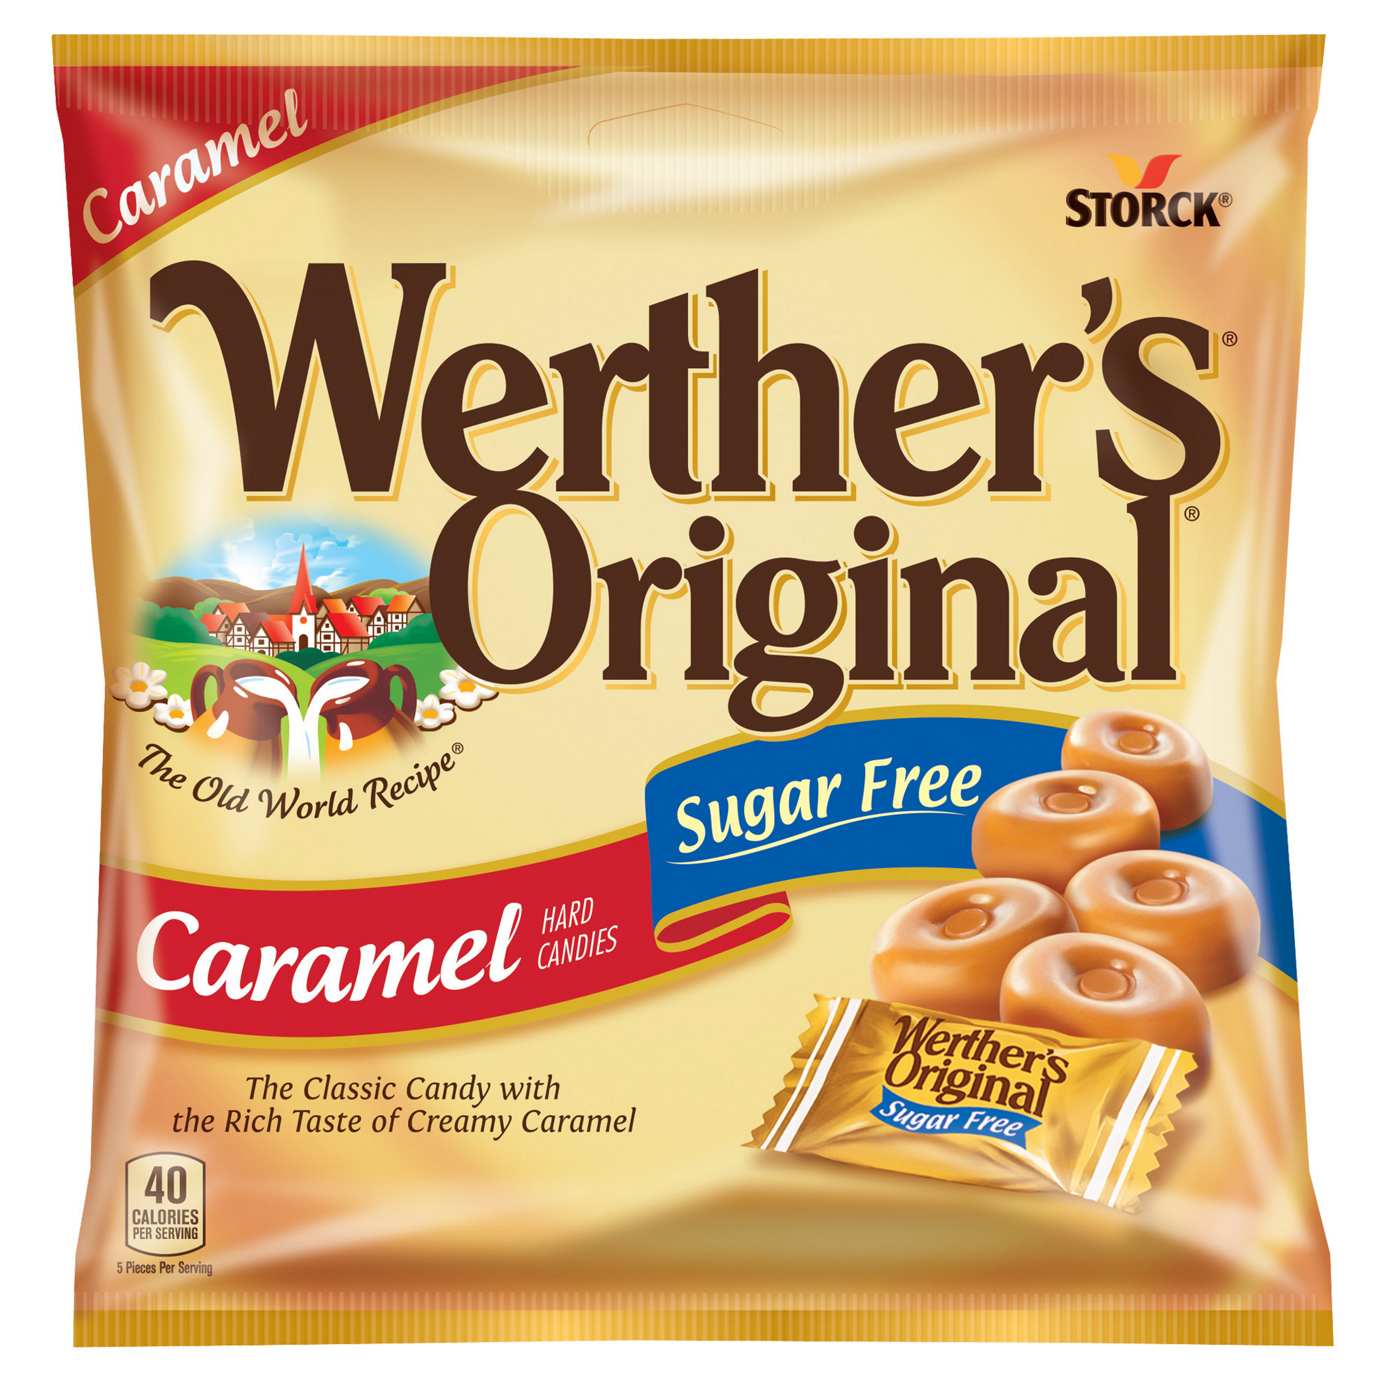 Werther's Original Hard Sugar Free Caramel Candy; image 1 of 6